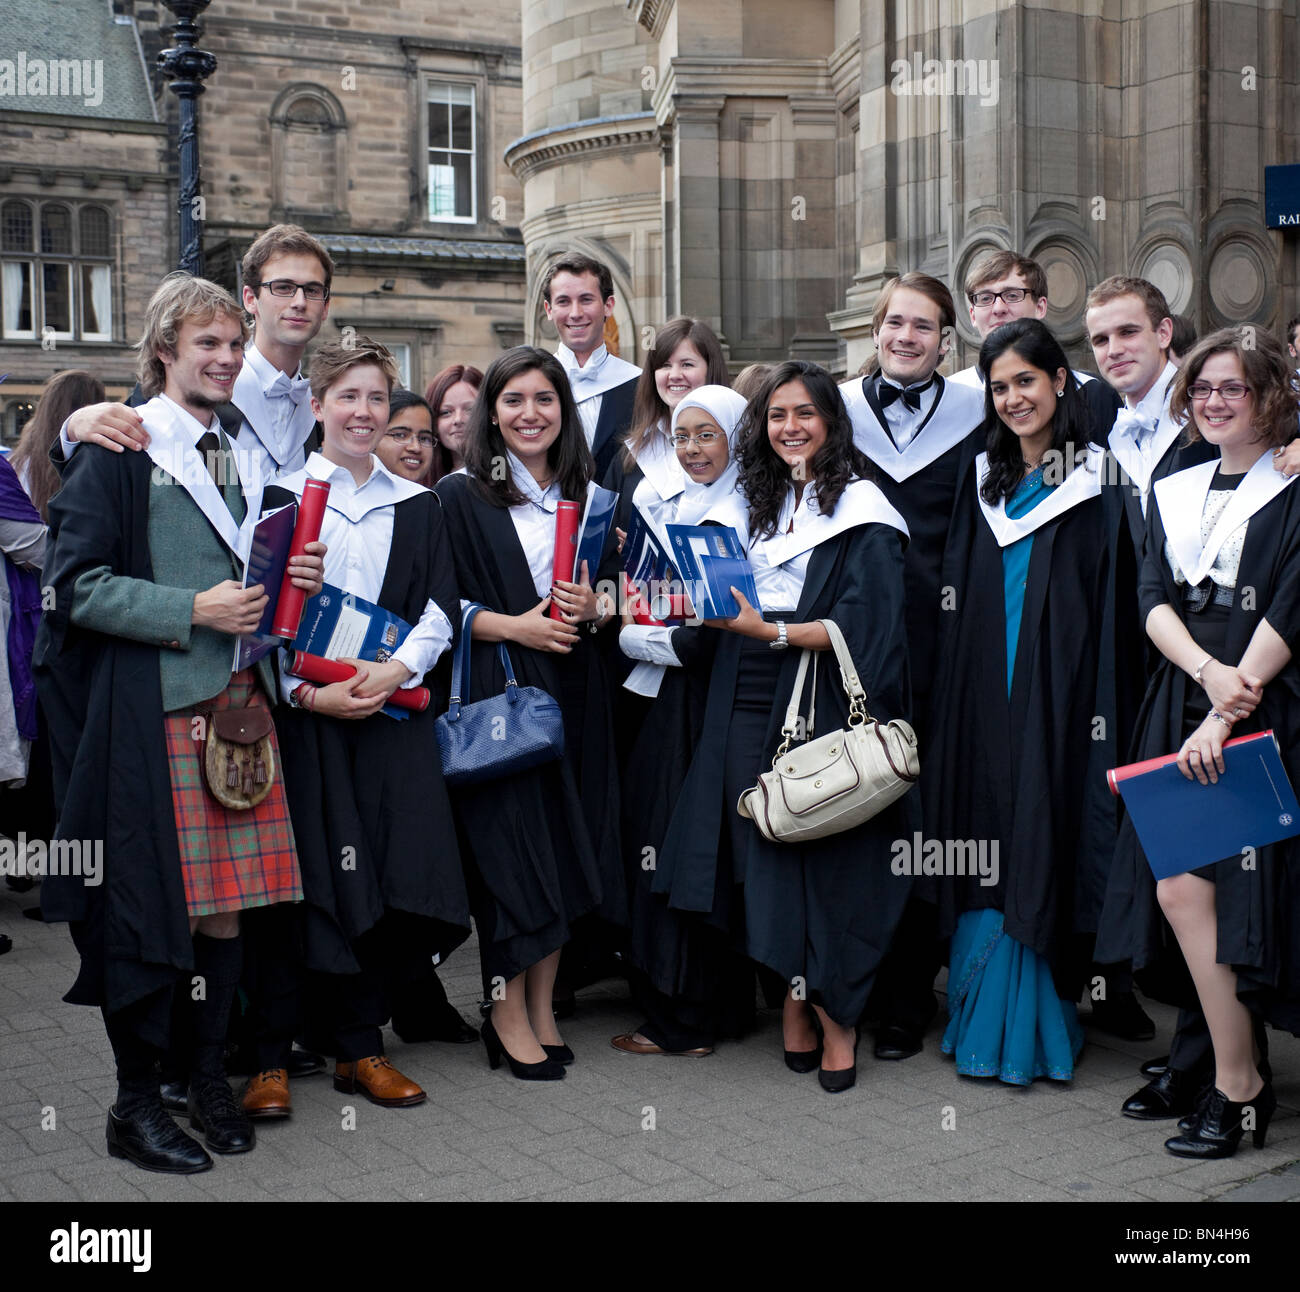 Groupe de femmes et d'hommes multiculturels les élèves qui sortent de l'Université d'Edimbourg, Ecosse, Royaume-Uni, Europe Banque D'Images